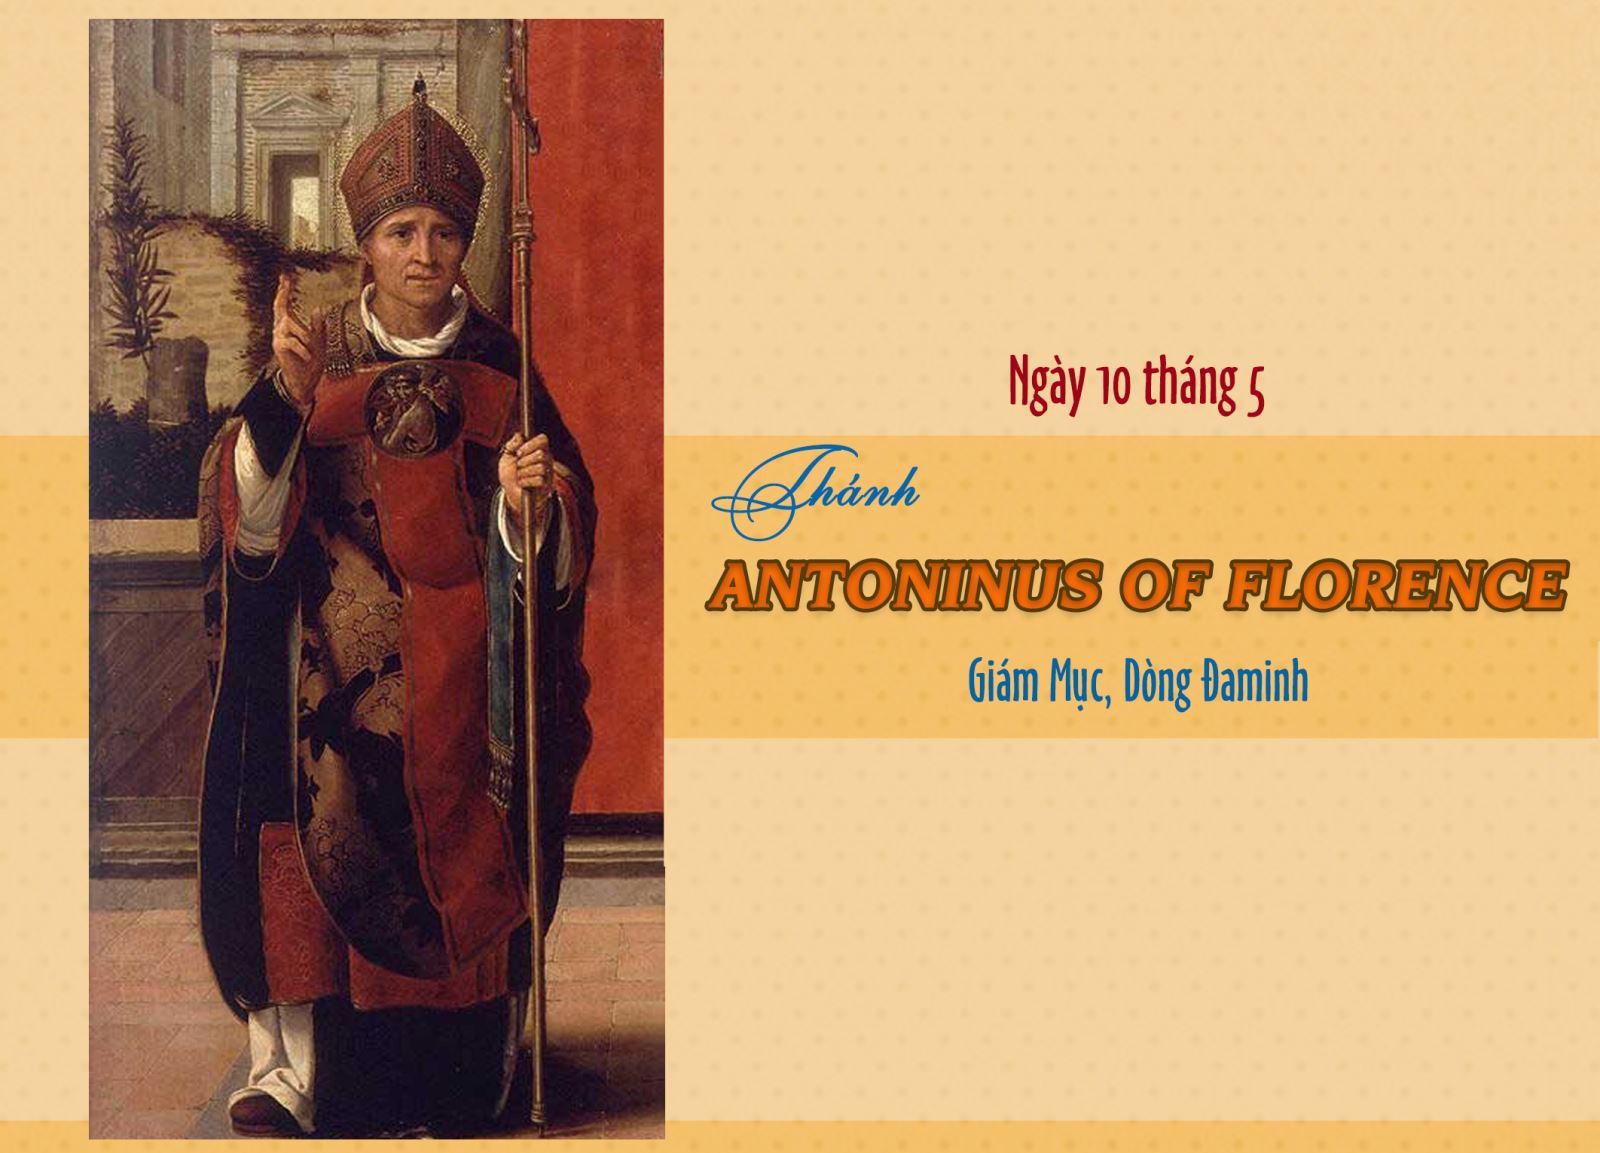 Ngày 10 tháng 5 - Thánh Antoninus thành Florence - Giám Mục, Dòng Đa Minh